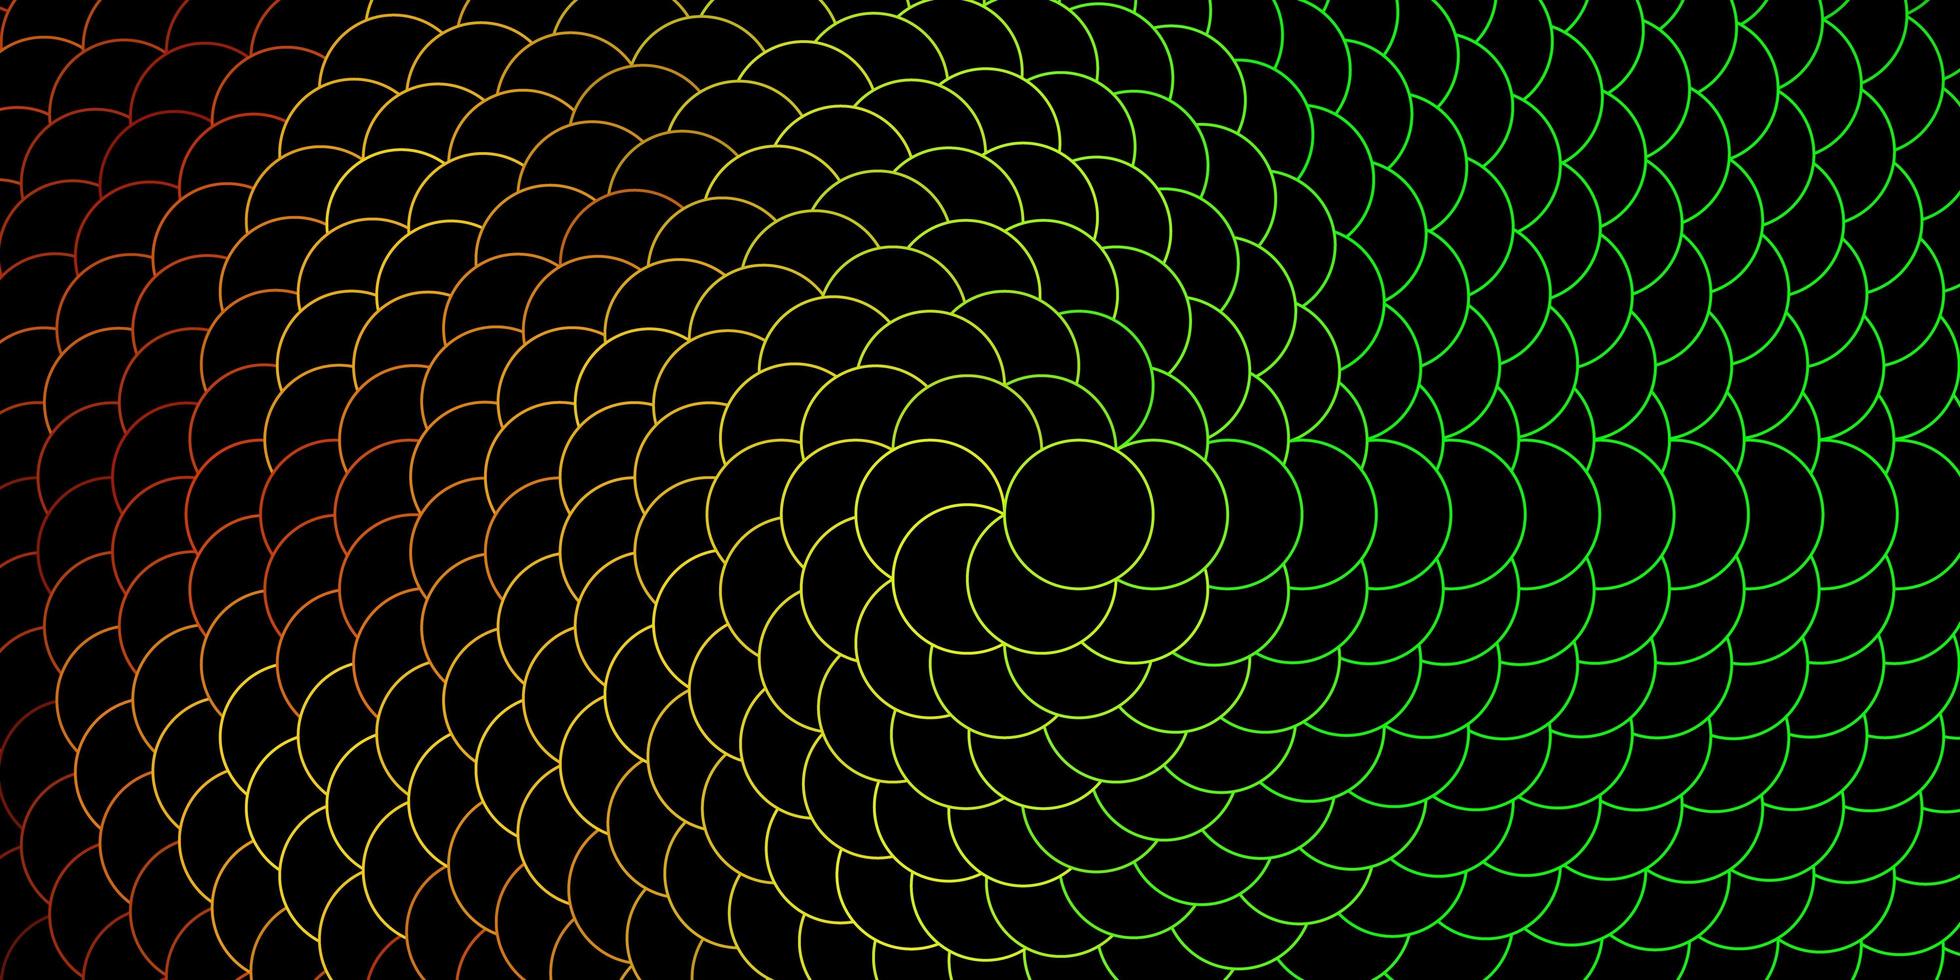 mörkgrön gul vektorbakgrund med cirklar färgstark illustration med lutande prickar i naturstilmönster för företagsannonser vektor